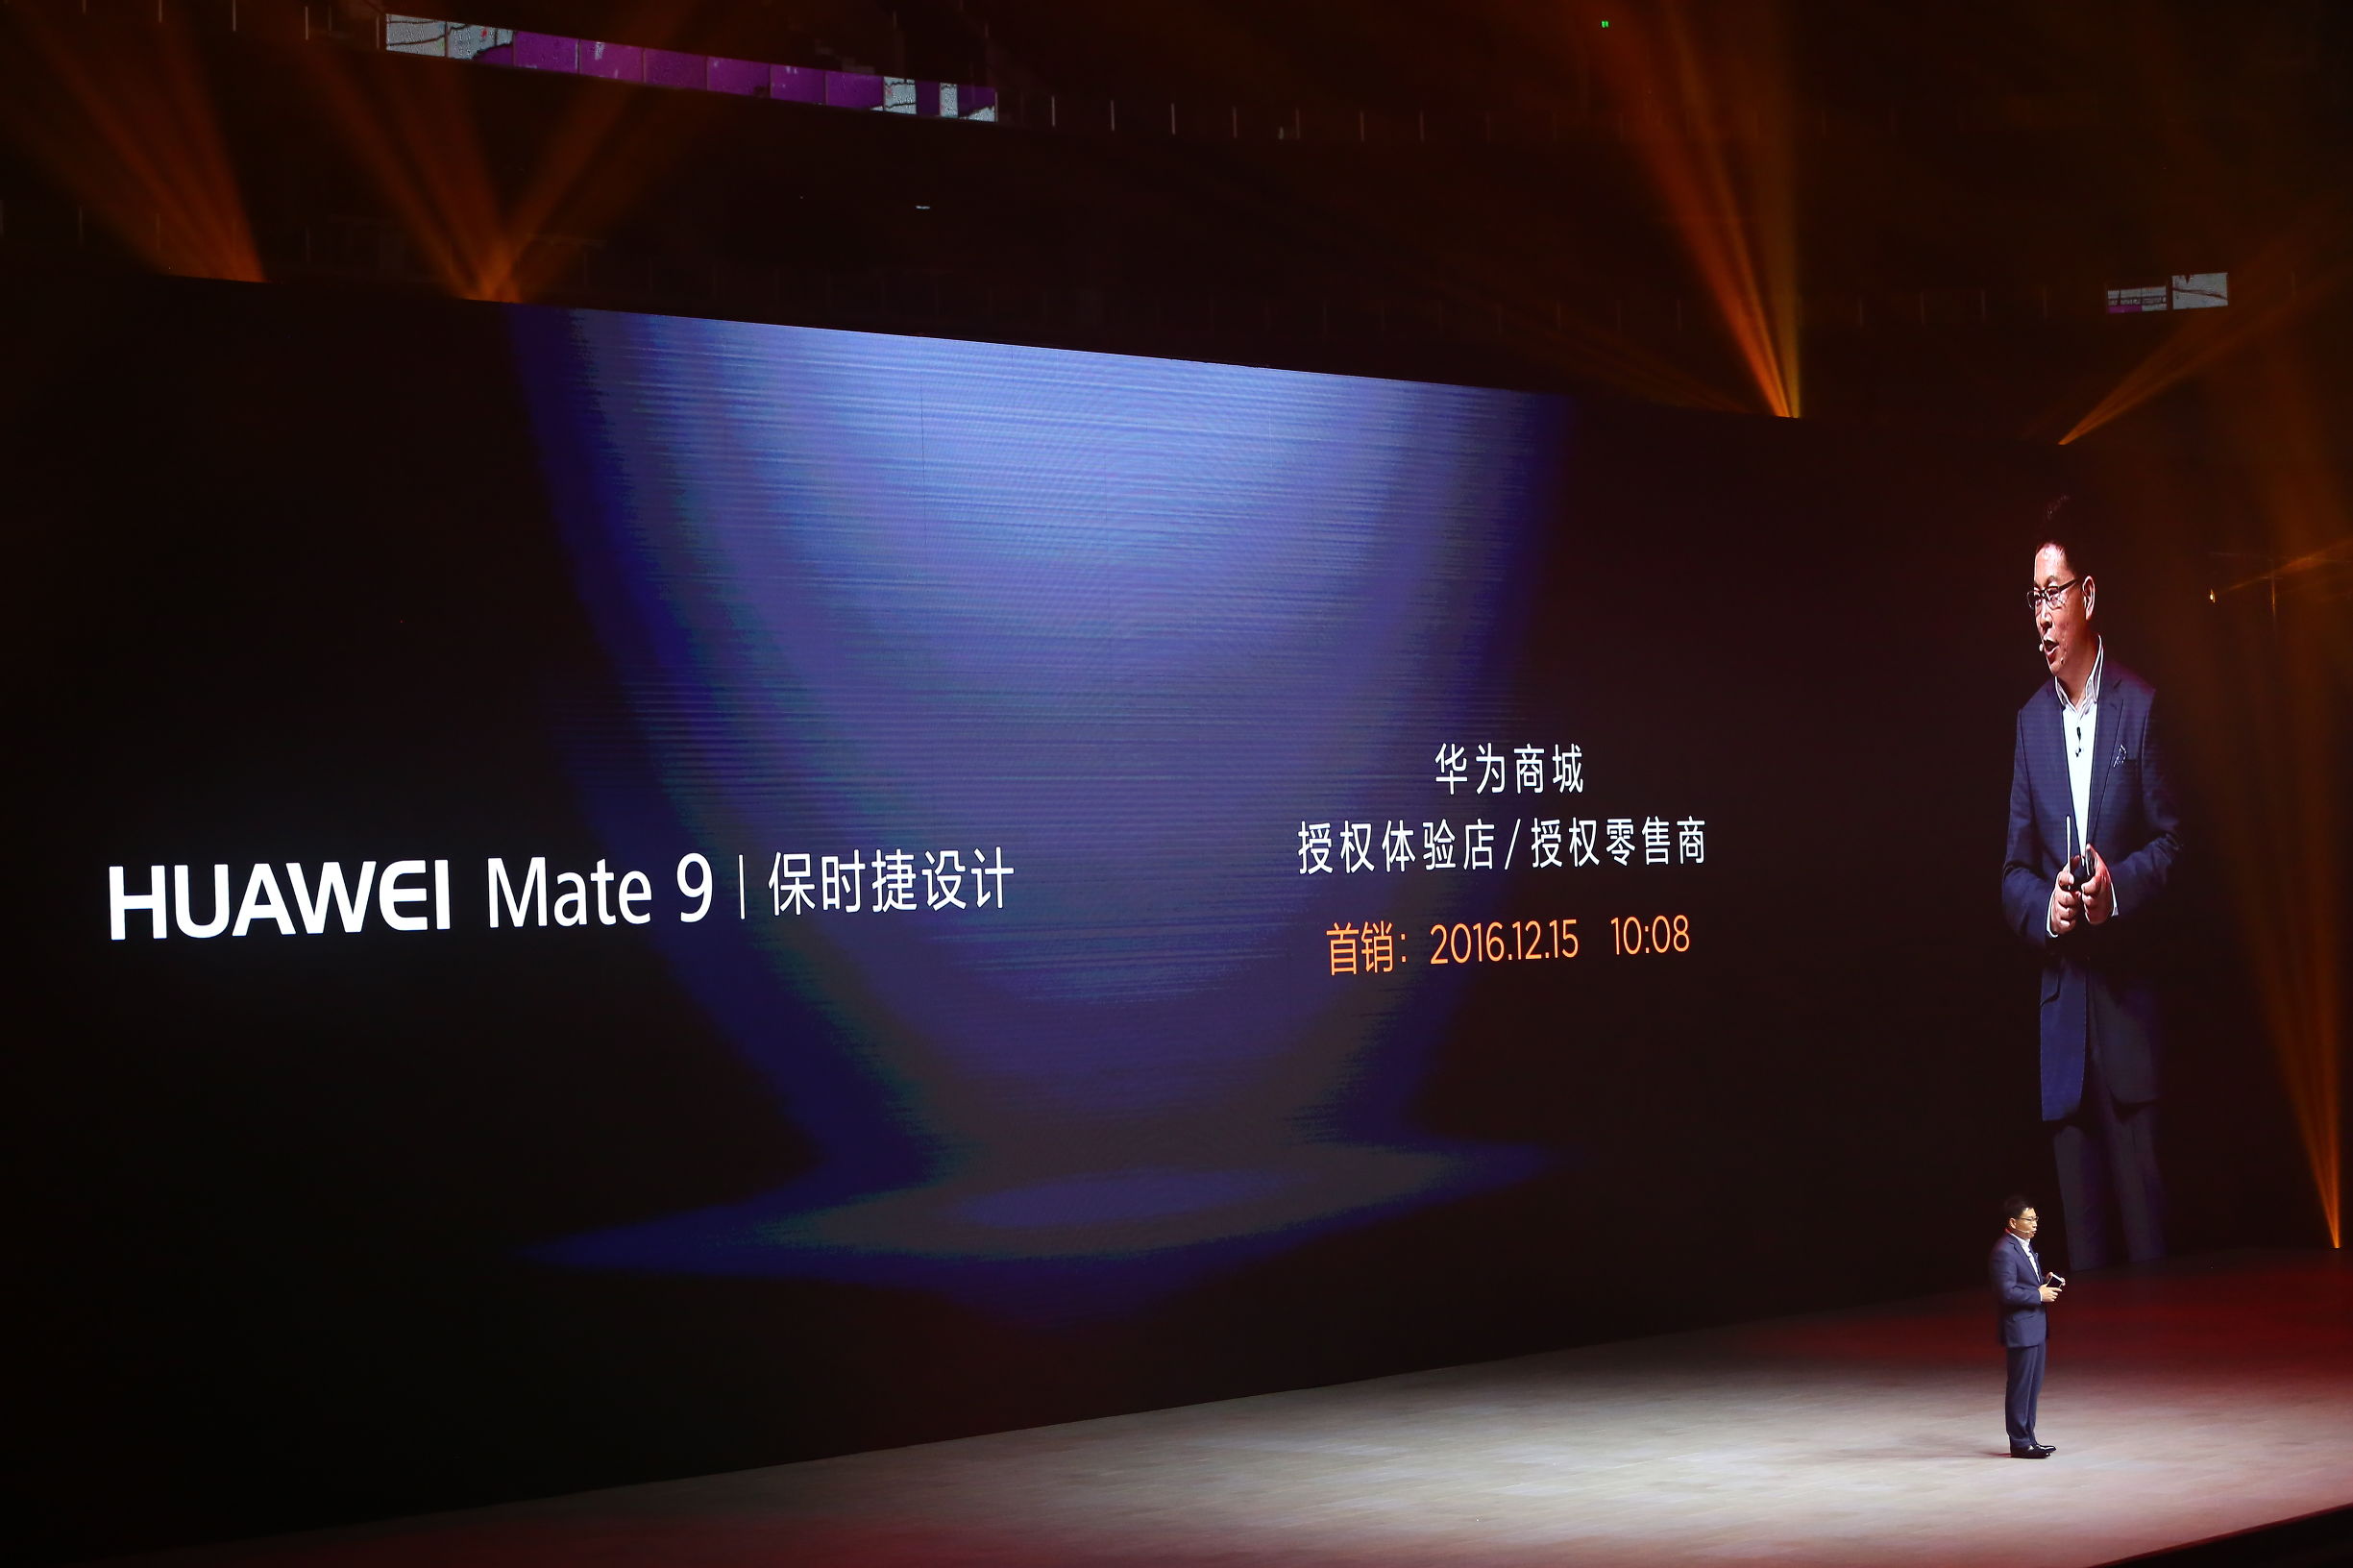 华为公司本年度最高端智能手机MATE 9系列产品最后标价及发布时间